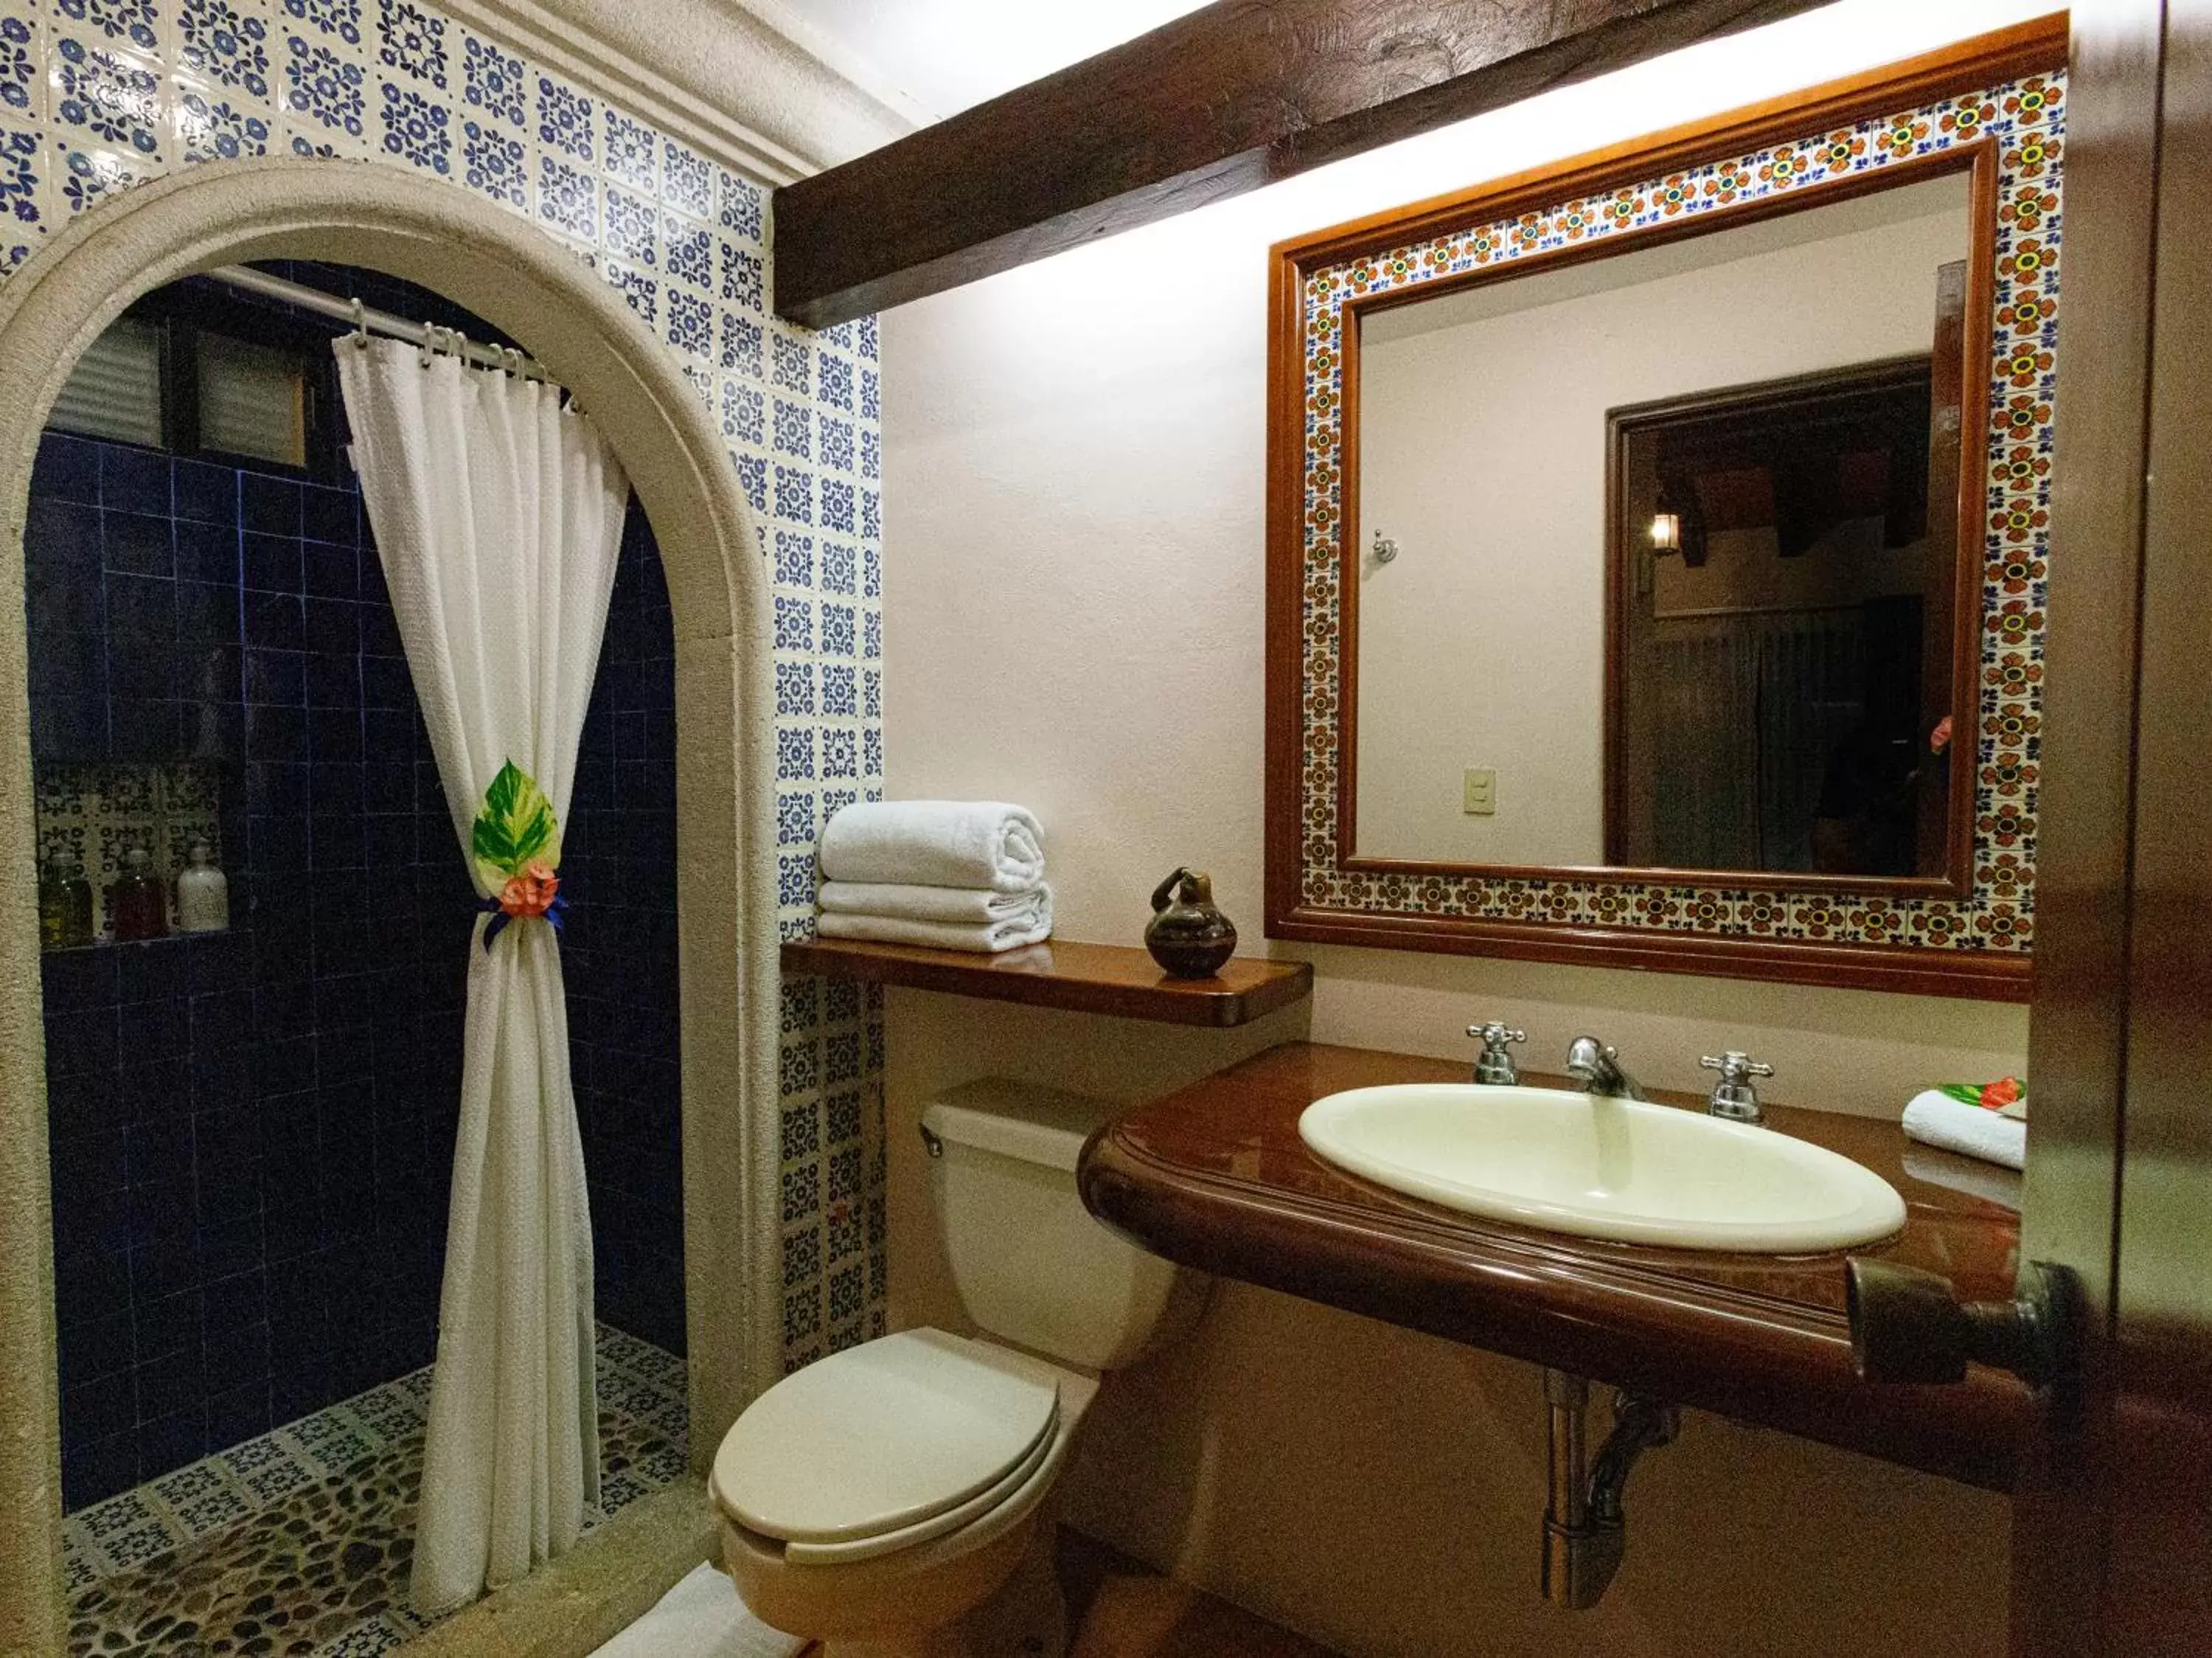 Bathroom in Hotel Lunata - 5th Avenue